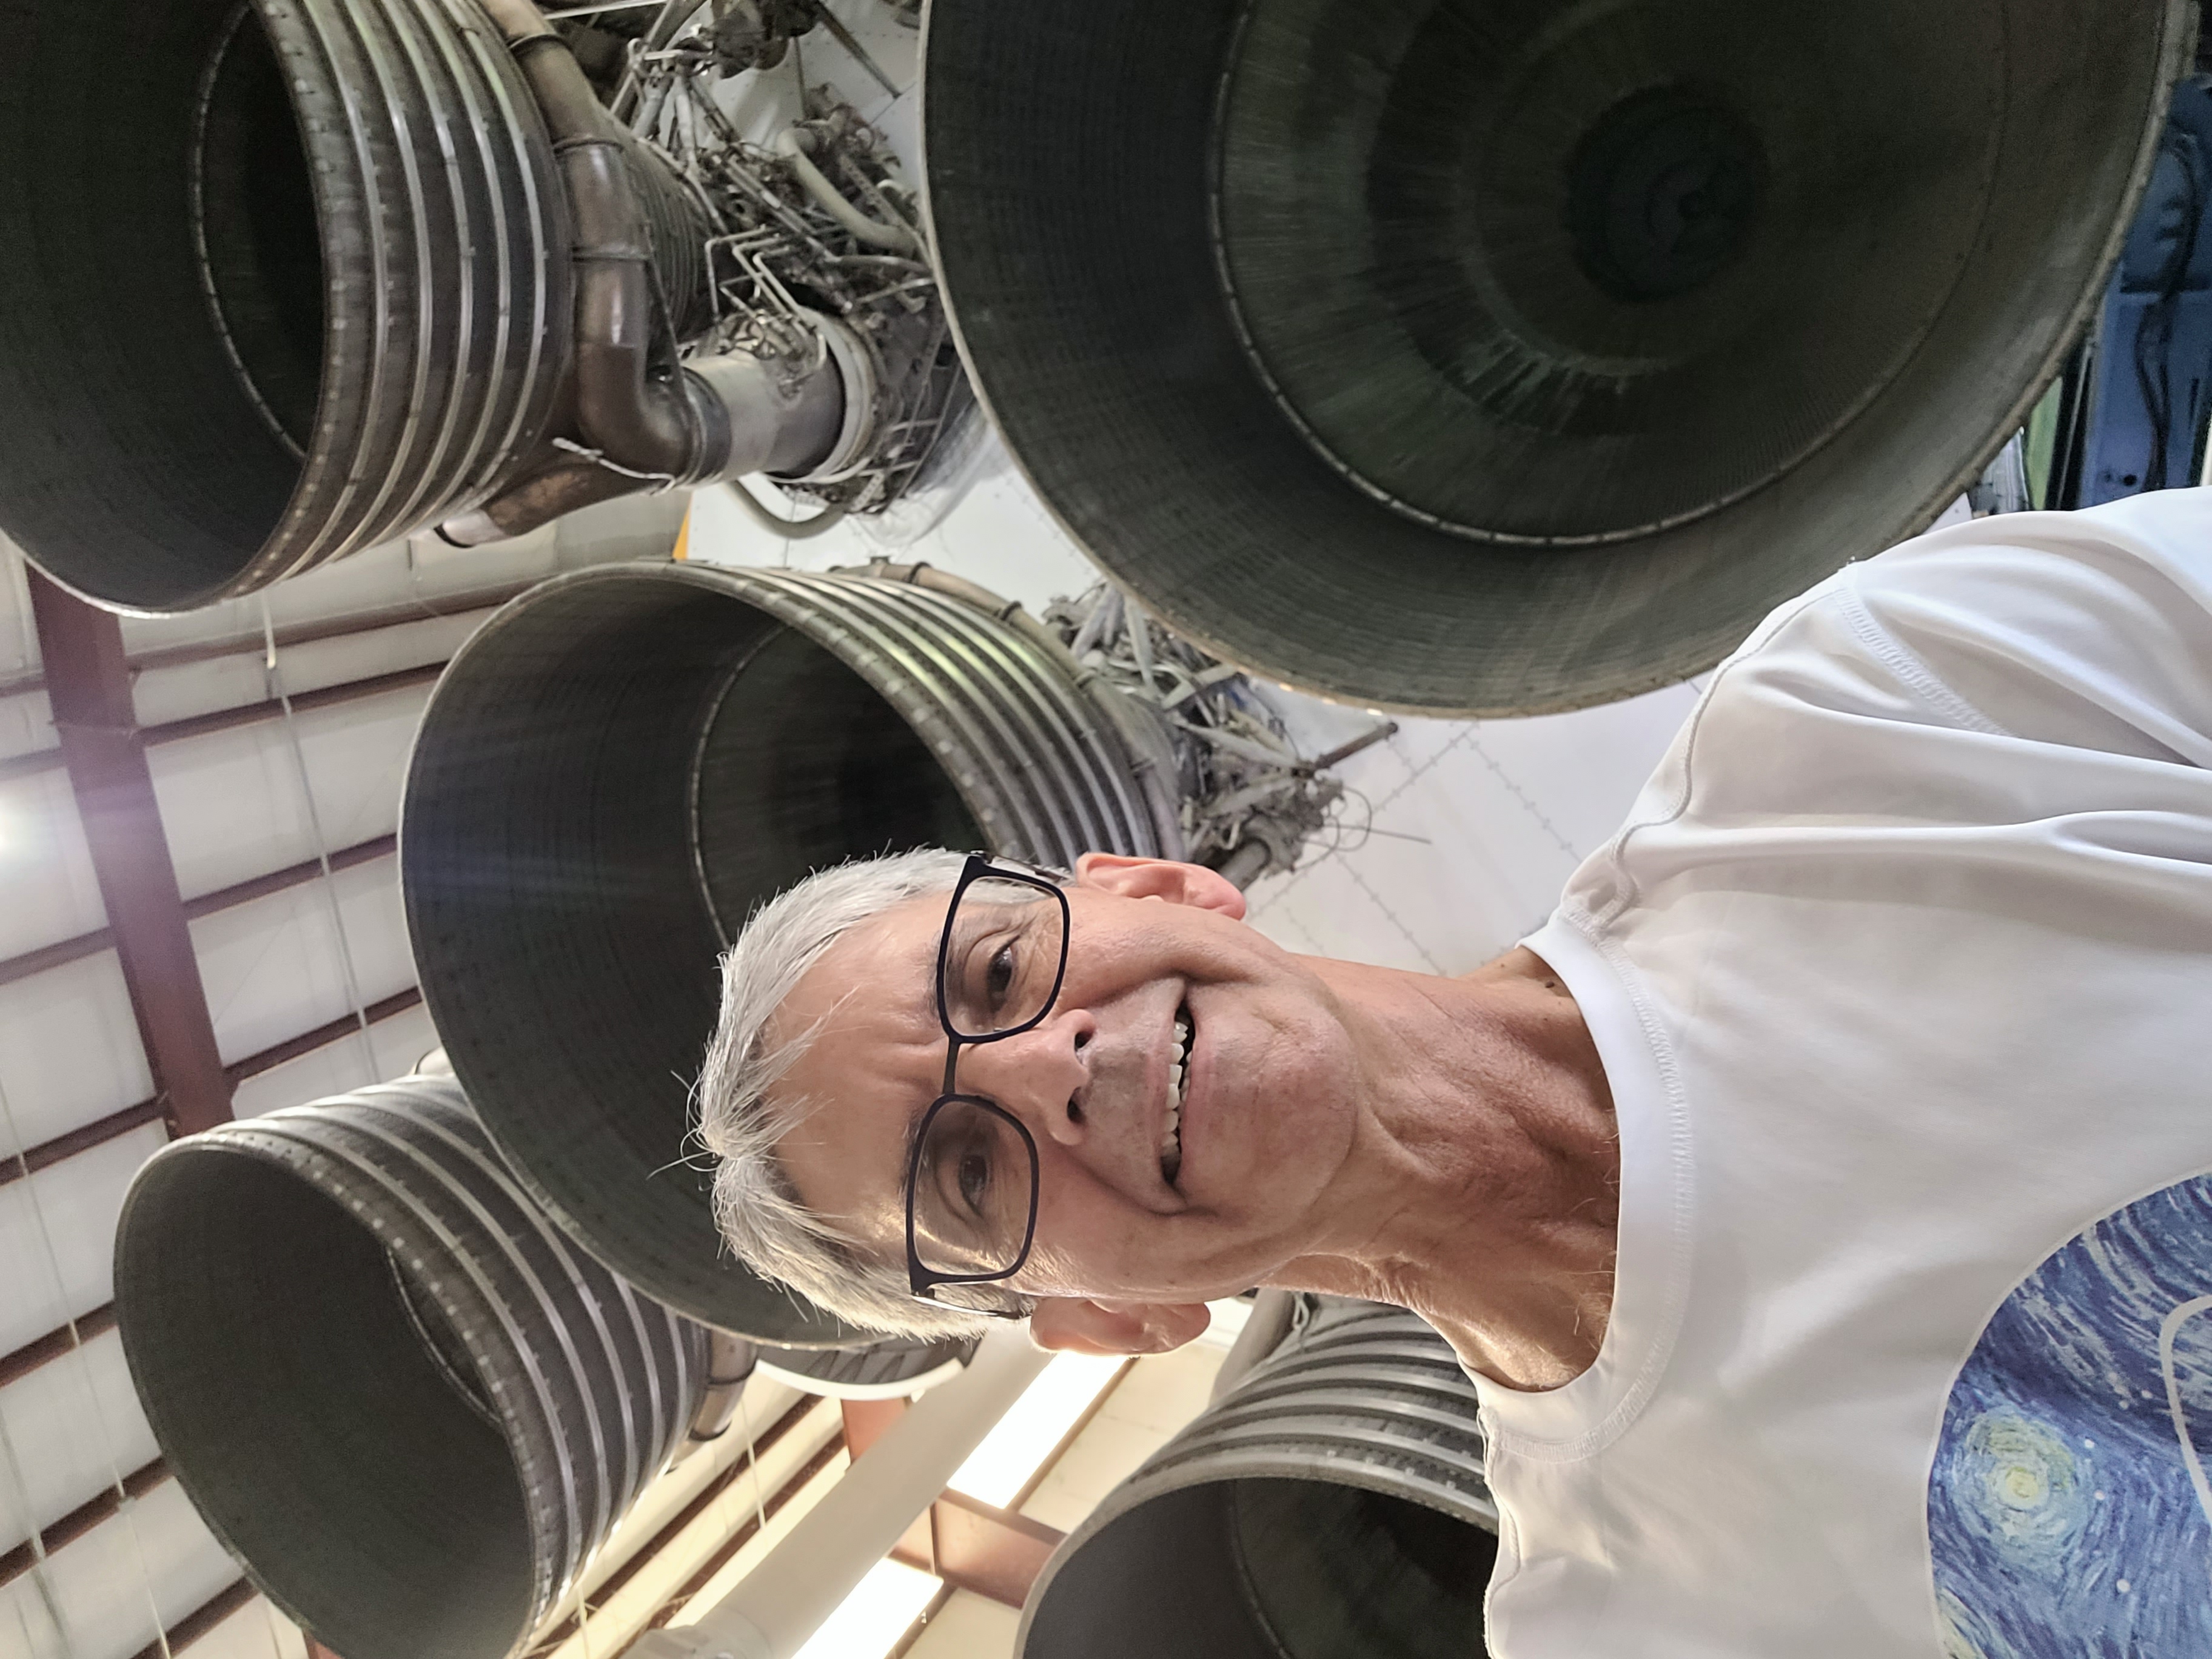 Greg Poteat Faculty Photo at NASA JSC Saturn V